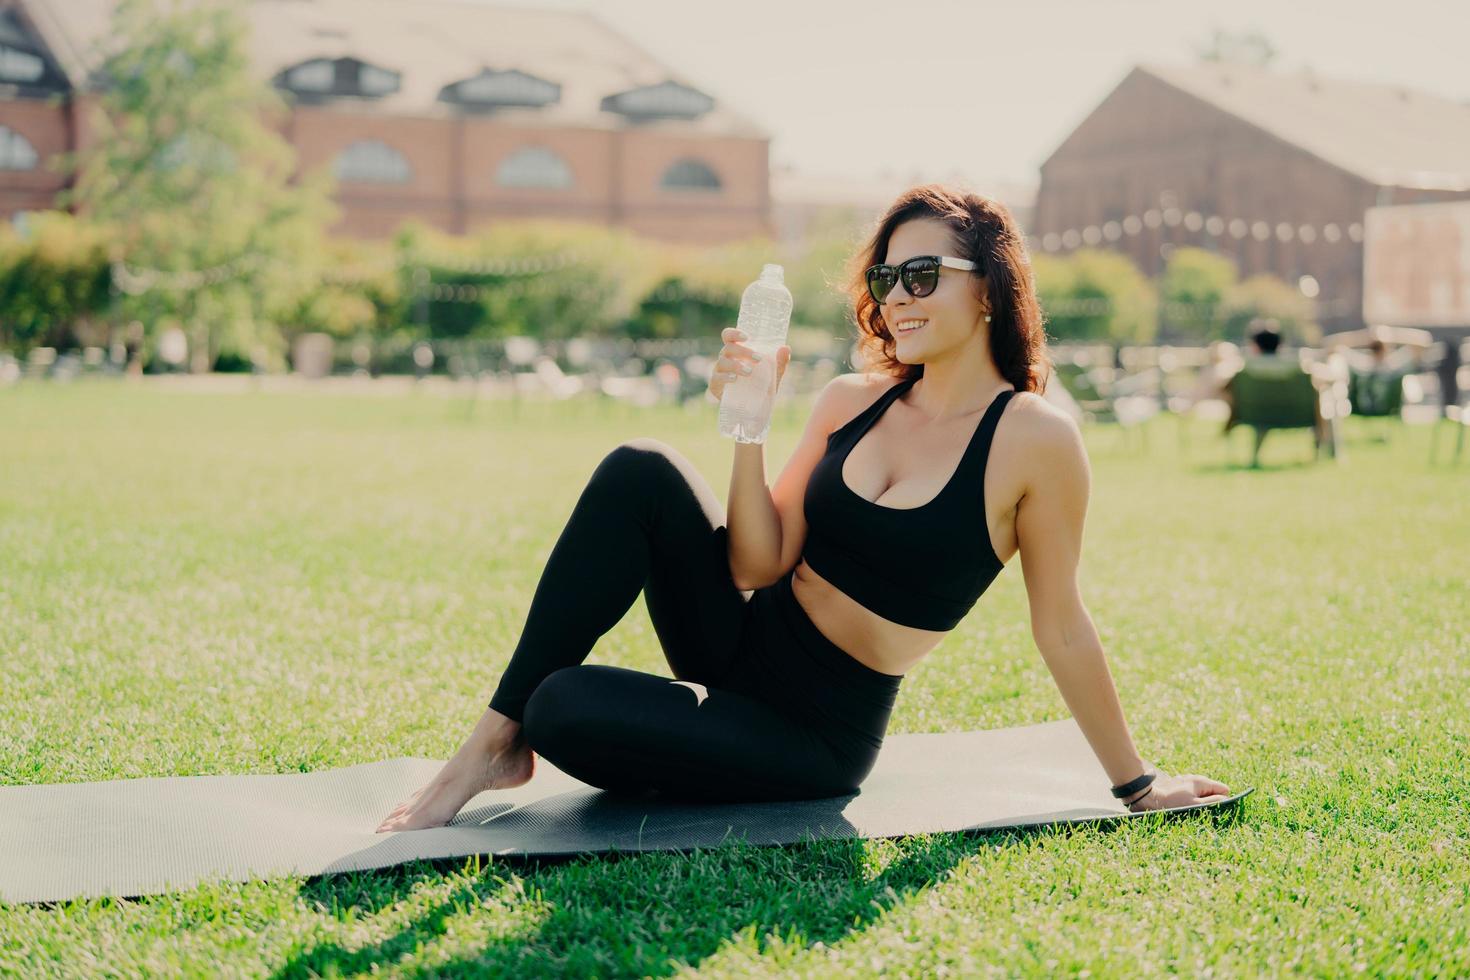 heureuse jeune femme européenne sportive se repose après l'entraînement pose sur un tapis de fitness avec les pieds nus boit de l'eau vêtue de lunettes de soleil actives mène un mode de vie sain. concept d'hydratation d'entraînement des personnes photo